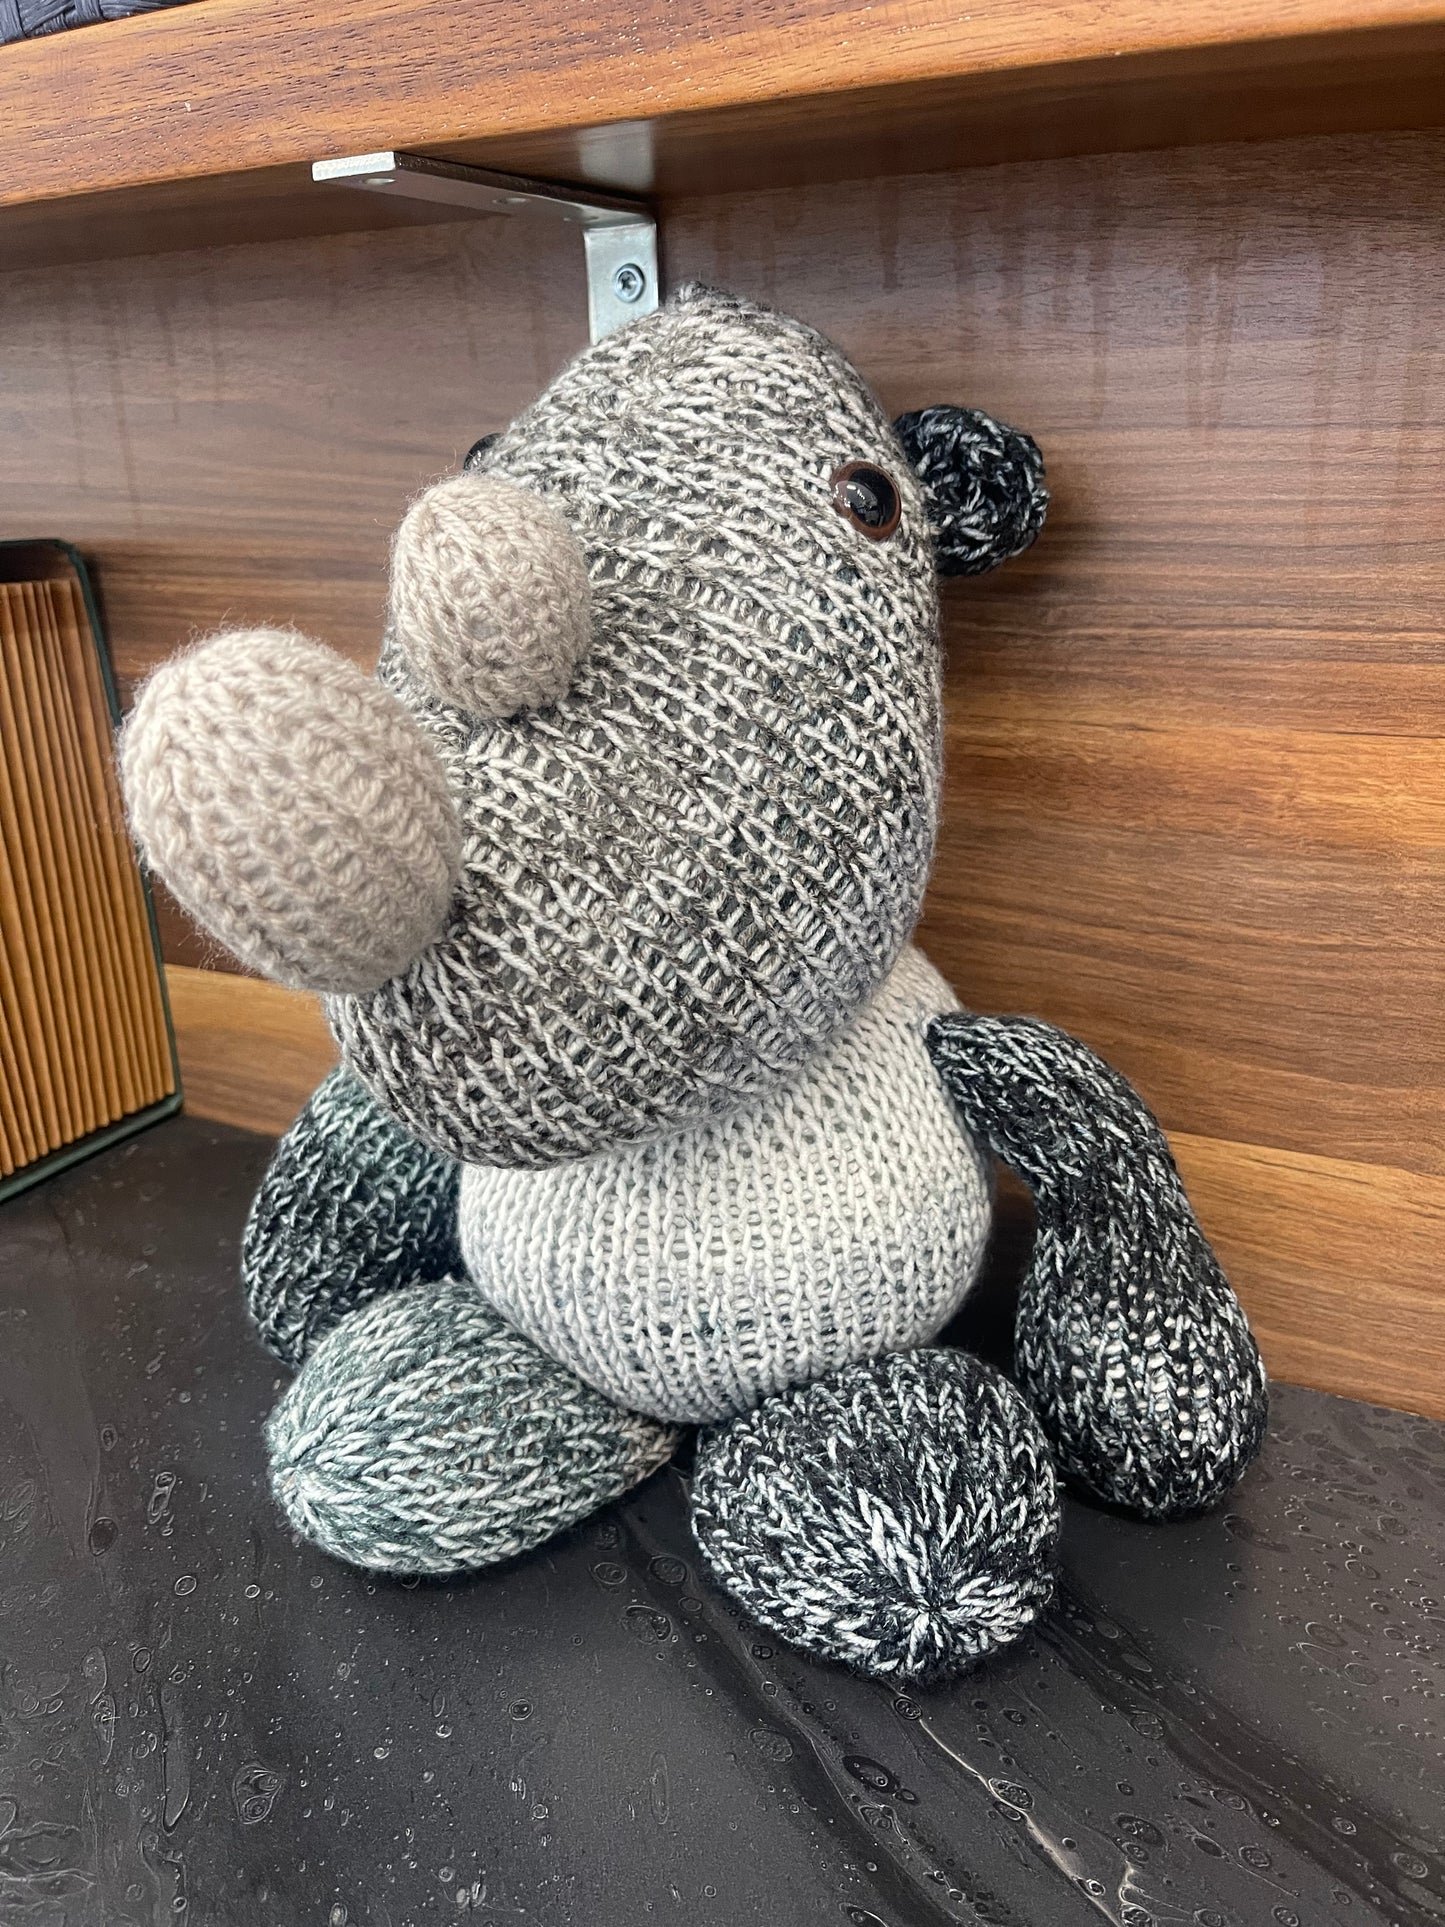 Rhino handmade crochet stuffed animal